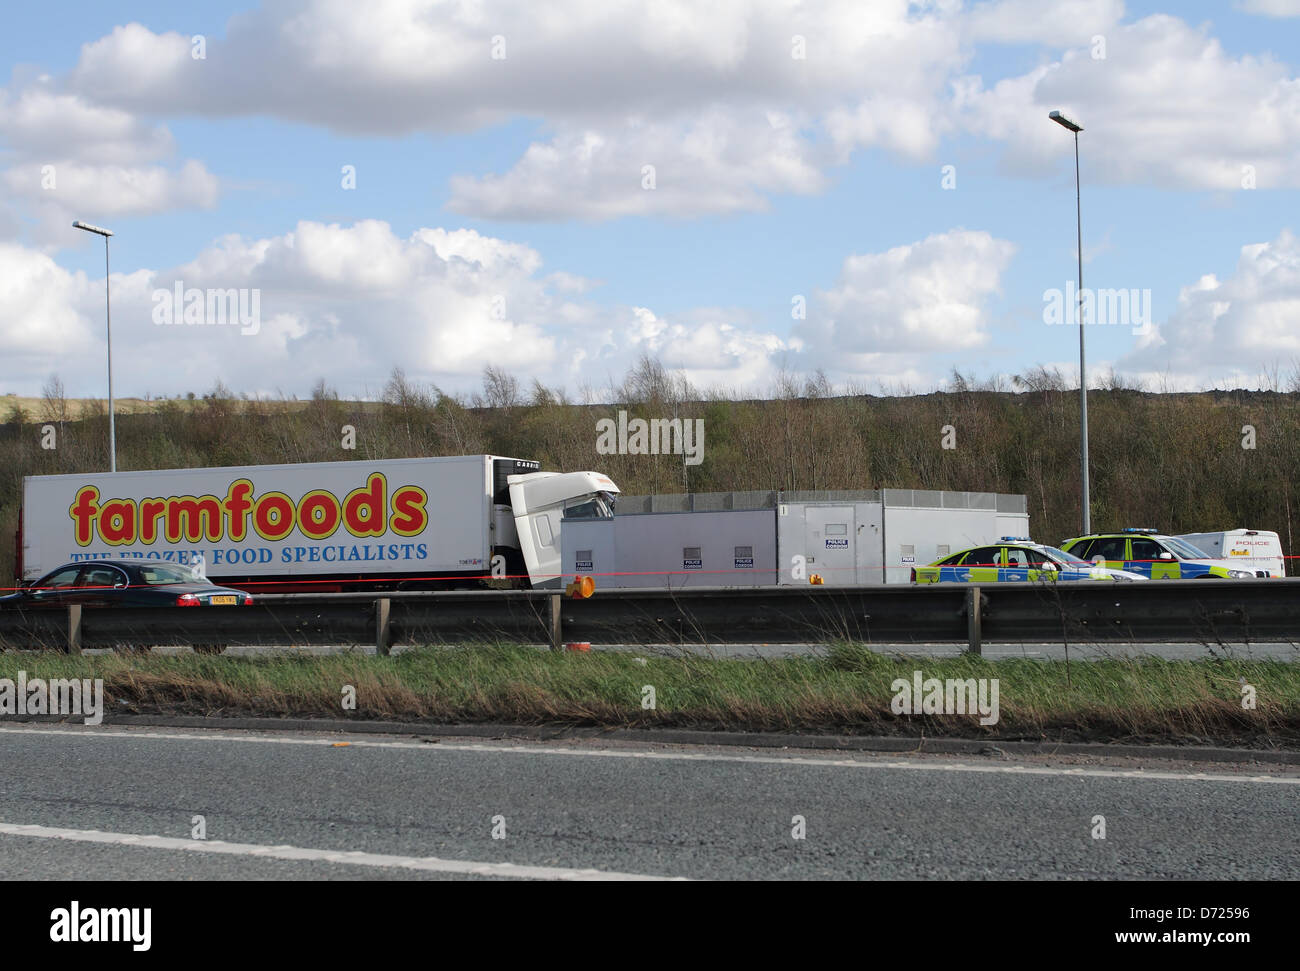 West Yorkshire, UK. 26 avril 2013. La sortie 32 de la M62, près de Pontefract est la scène d'un accident de la route mortel impliquant un camion et une Farmfoods mini bus, une passagère du mini bus tués et 20 autres blessés. Credit : Bojangles/Alamy Live News Banque D'Images